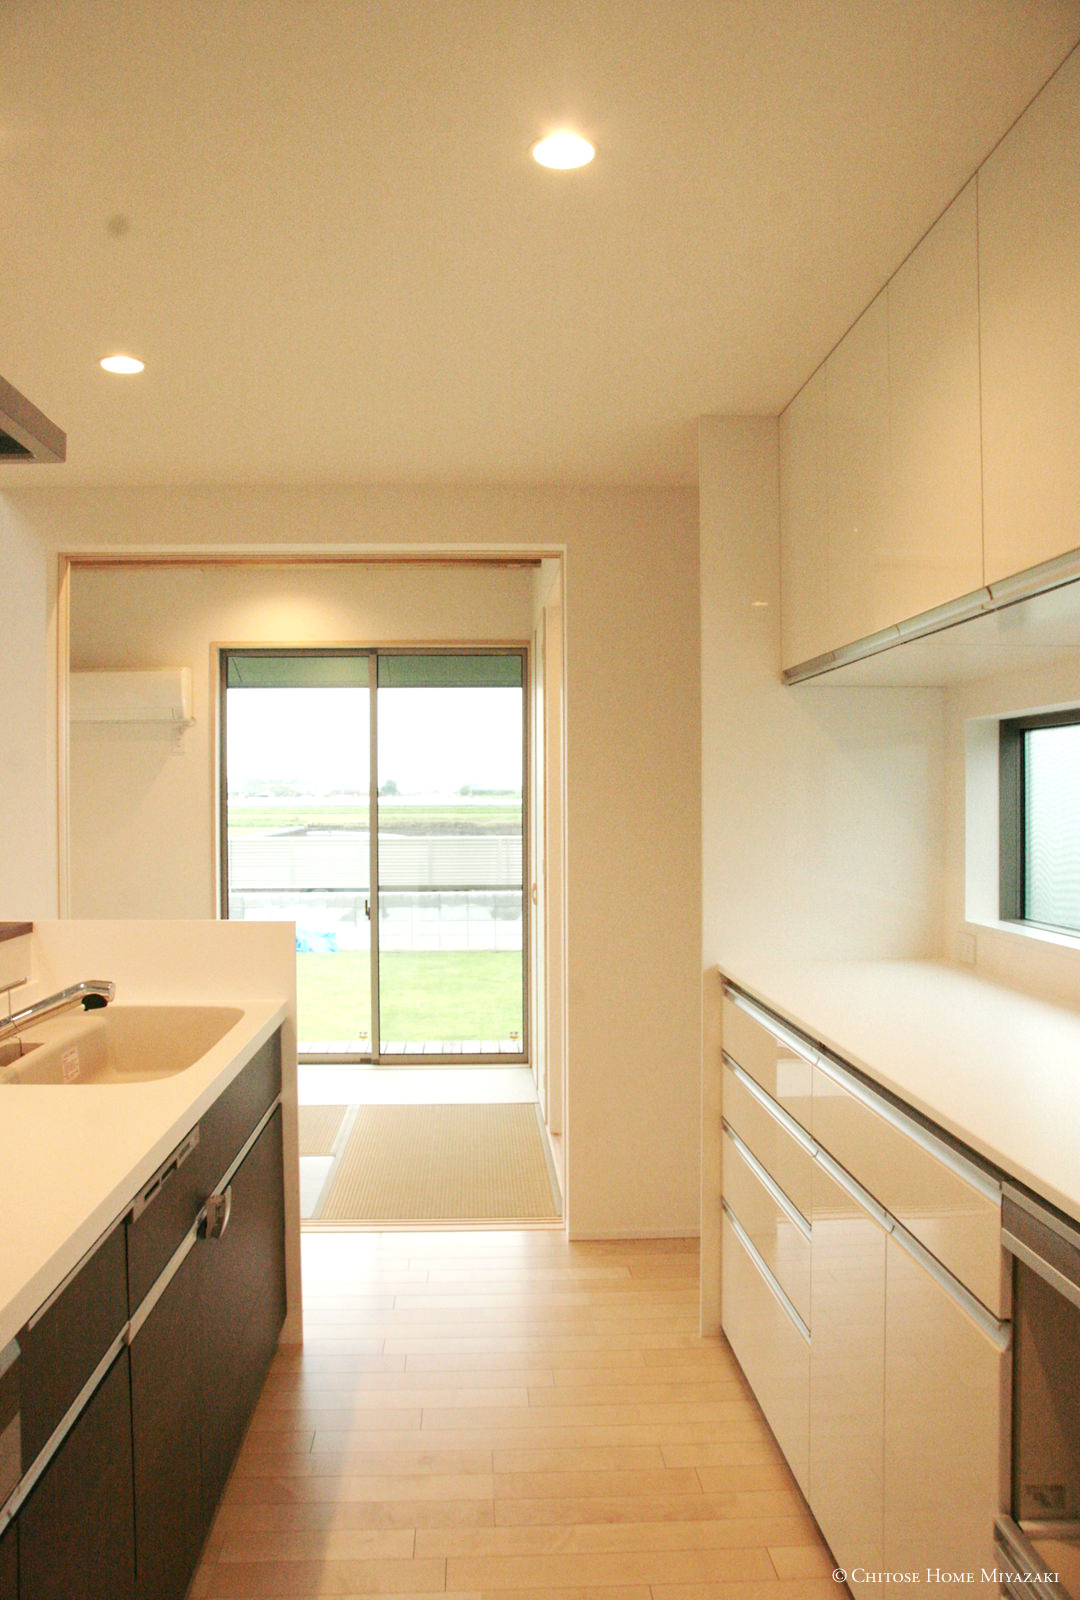 キッチン横の和室の大開口窓から光と風を十分に取り込む。キッチンから洗面、浴室への家事動線に快適な空気の環境を作ることは、日常の生活空間の大切な要素。